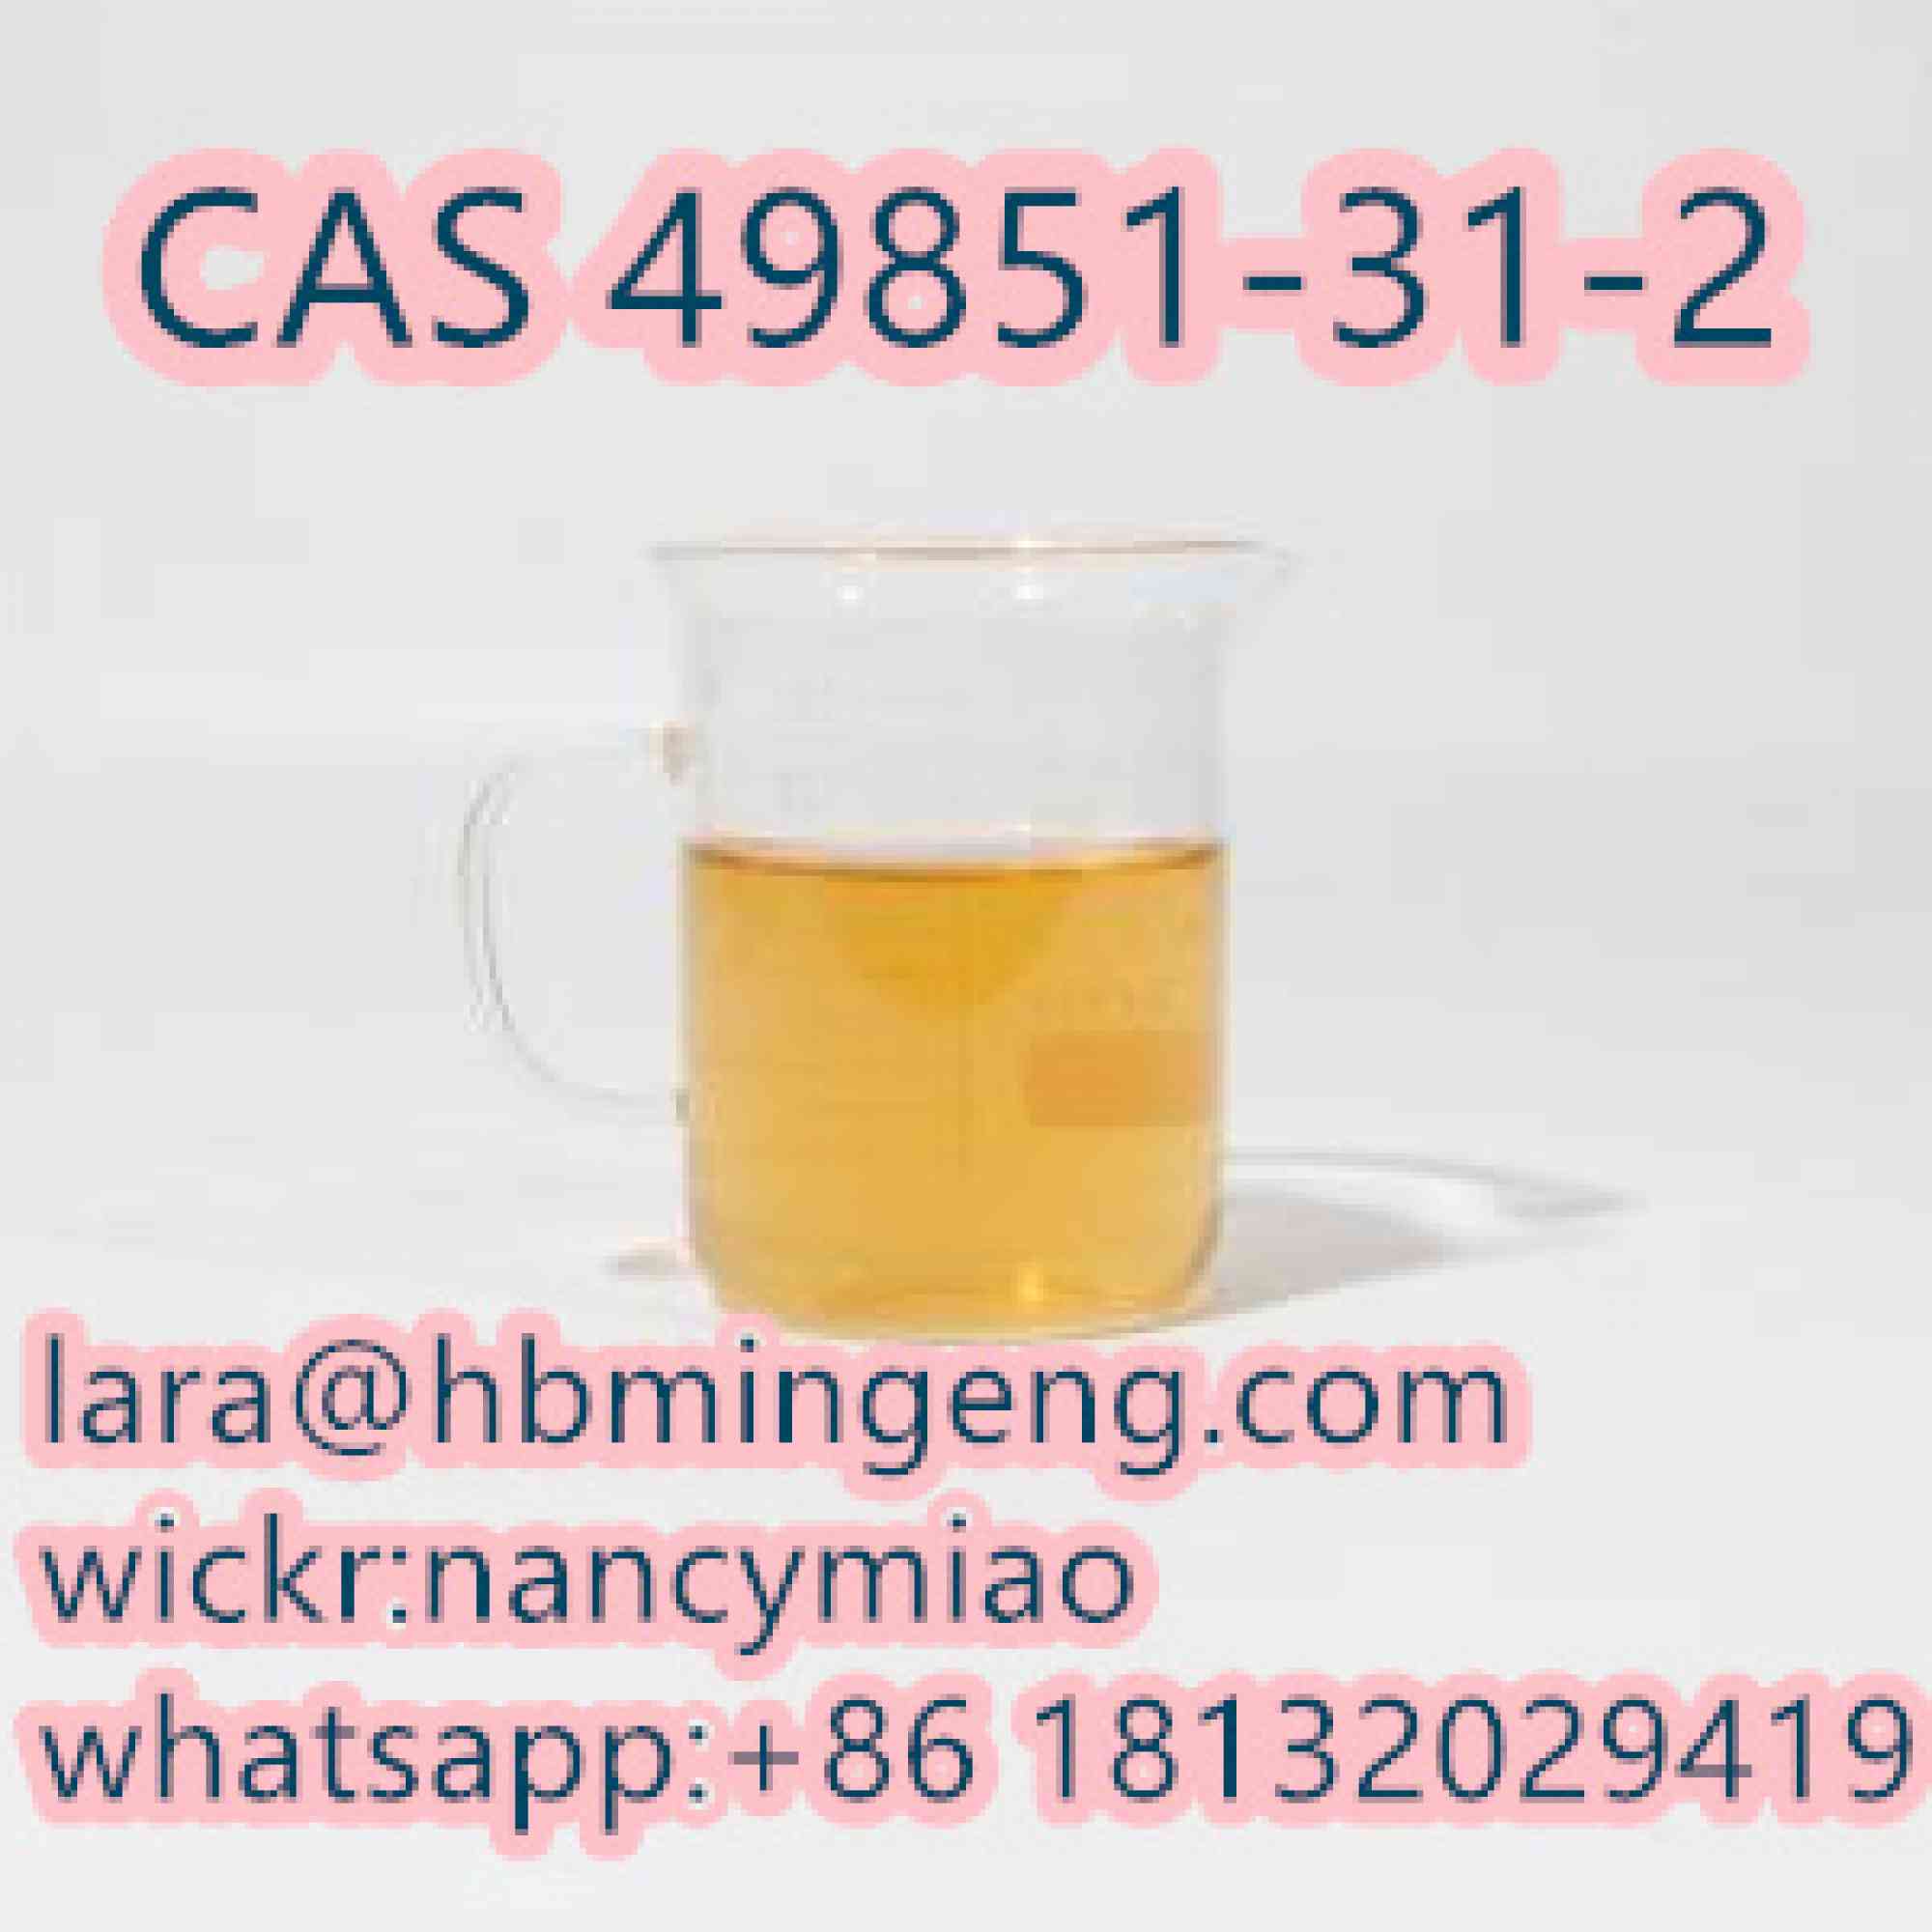 Anuncios de Industria y Agricultura - Anuncios Clasificados Gratis - Todoclasificados, Chinese Manufacturer  CAS 49851-31-2 